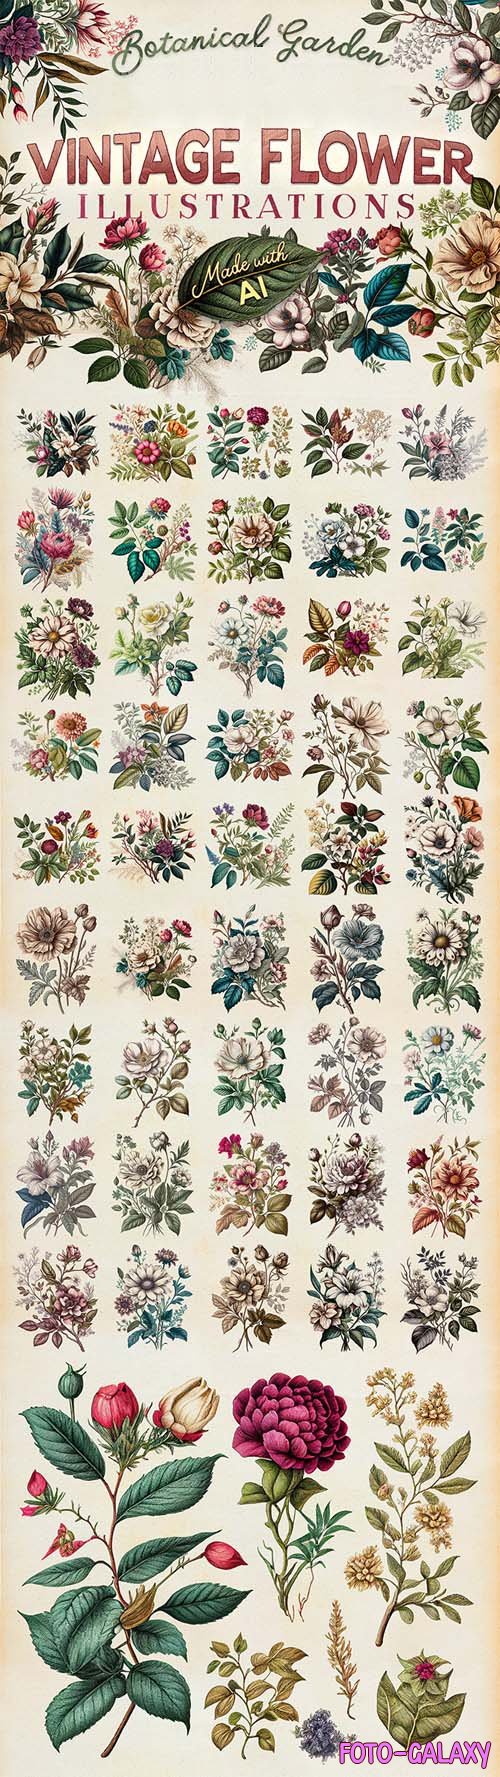 Vintage Botanical Garden & Flower Illustrations